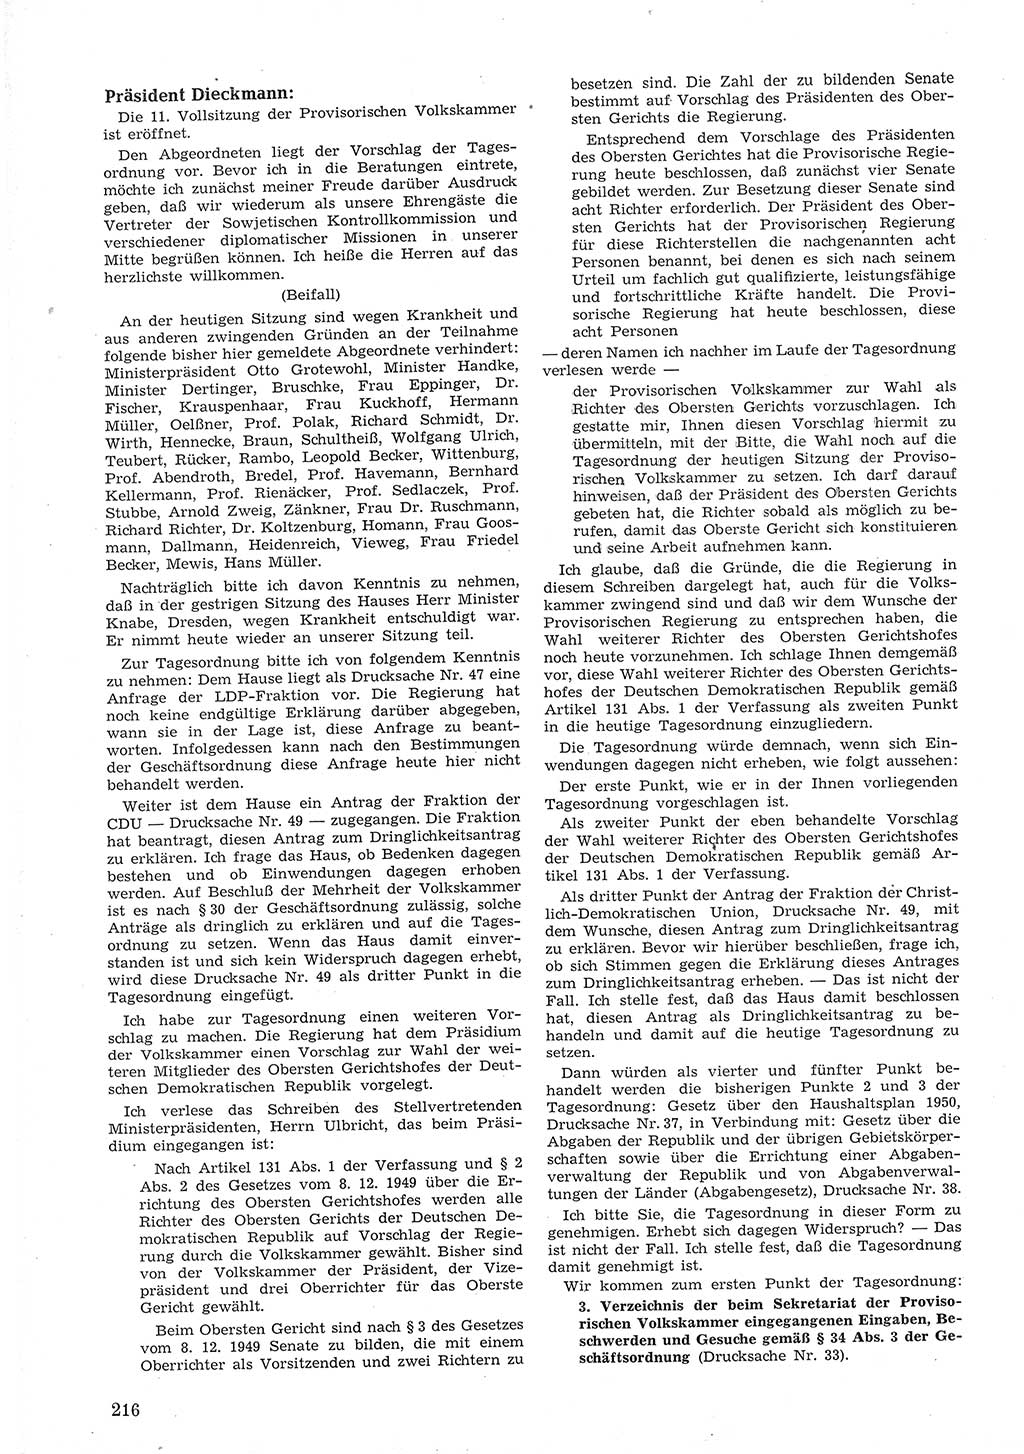 Provisorische Volkskammer (VK) der Deutschen Demokratischen Republik (DDR) 1949-1950, Dokument 230 (Prov. VK DDR 1949-1950, Dok. 230)